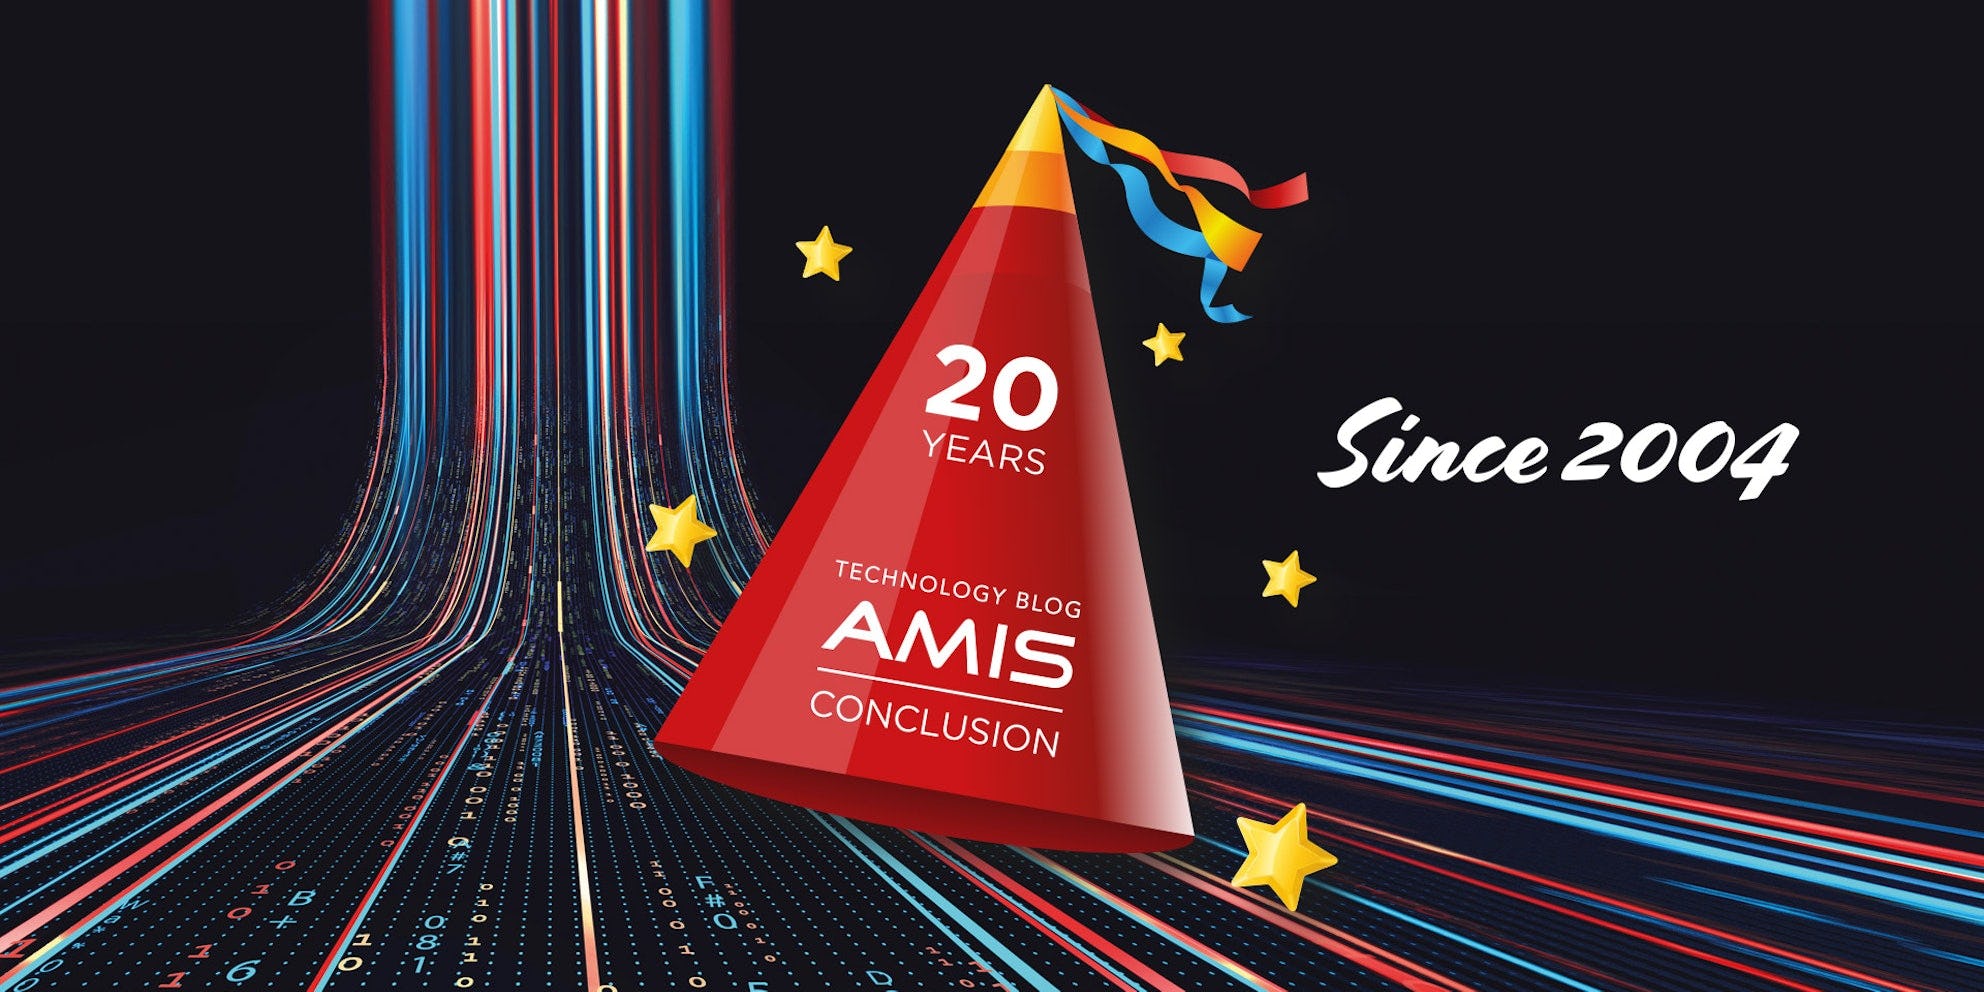 AMIS Technology Blog viert 20e verjaardag